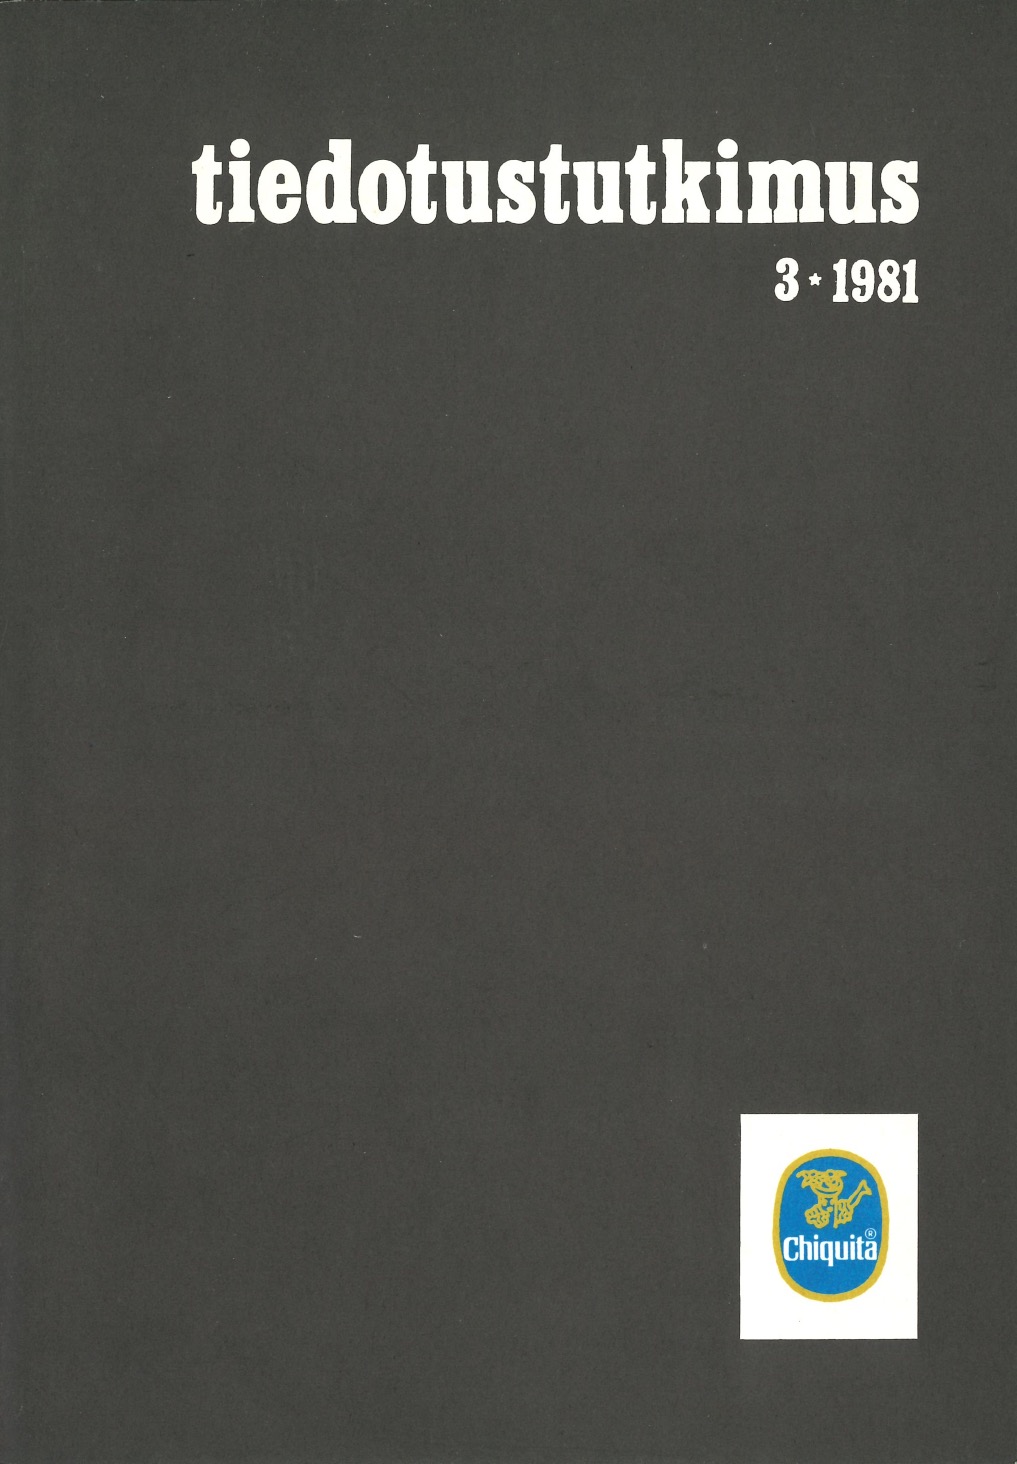 					Näytä Vol 4 Nro 3 (1981)
				